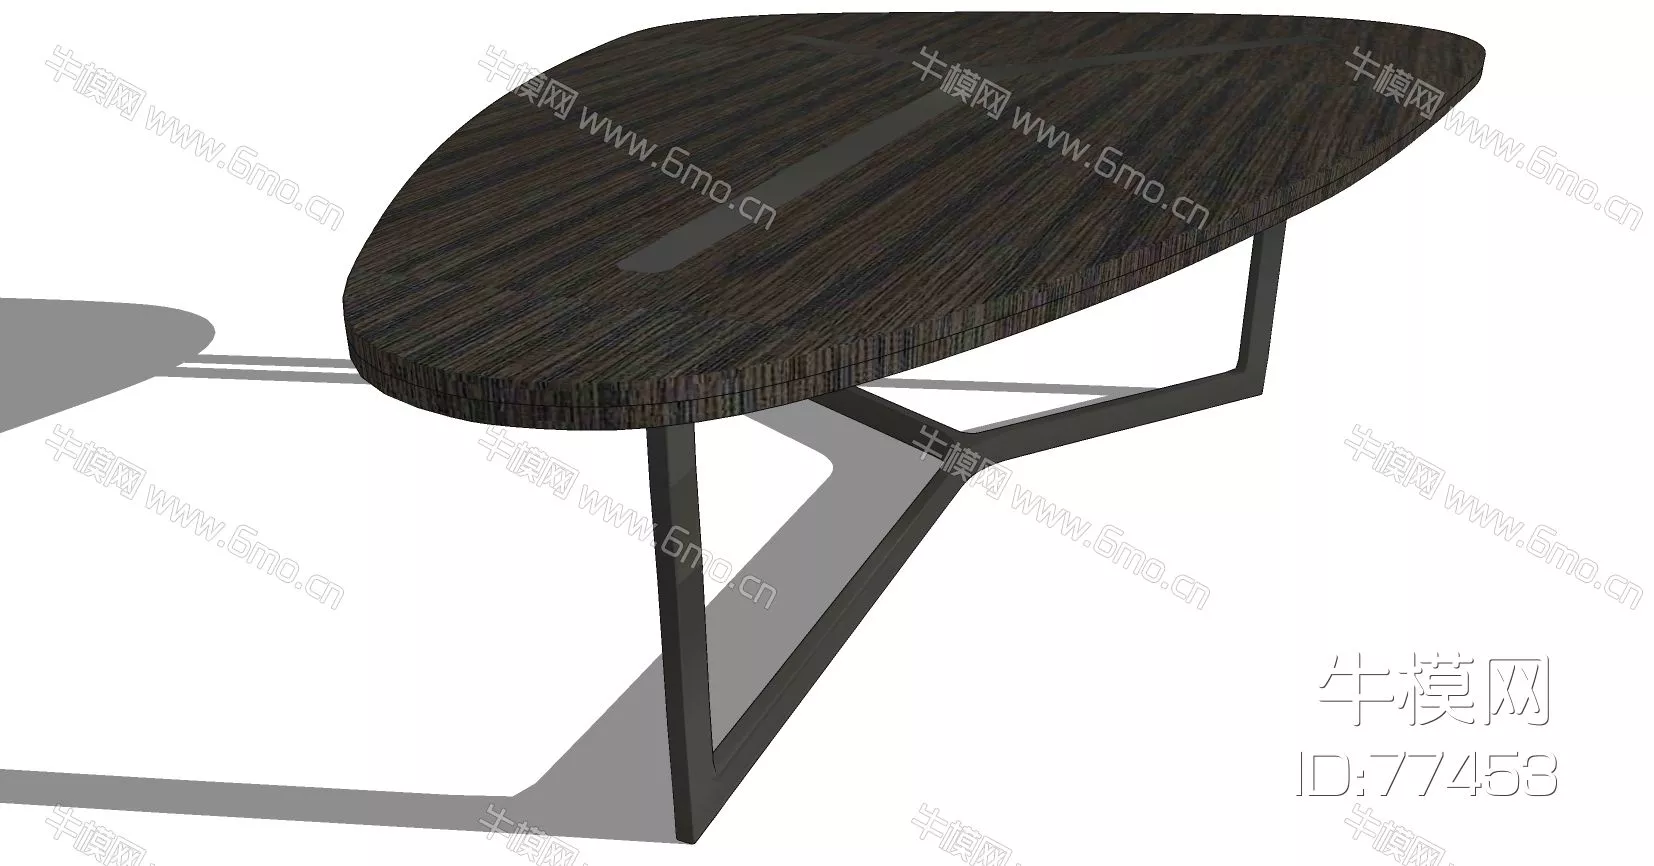 NORDIC SIDE TABLE - SKETCHUP 3D MODEL - ENSCAPE - 77453